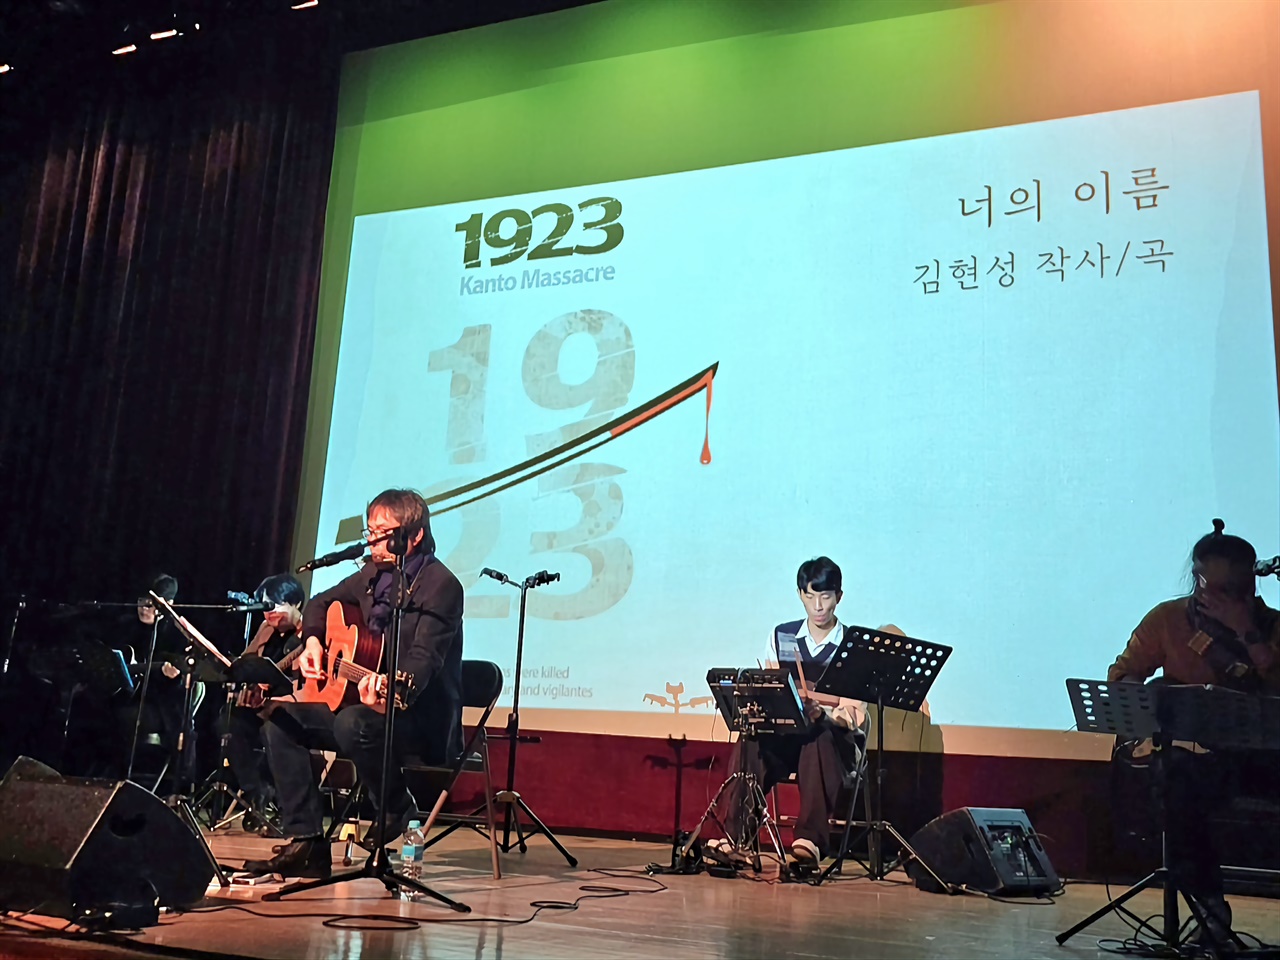  다큐멘터리 영화 <1923> 삽입곡인 '너의 이름' 부르는 가수 겸 작곡가 김현성(왼쪽 기타를 치는 이)